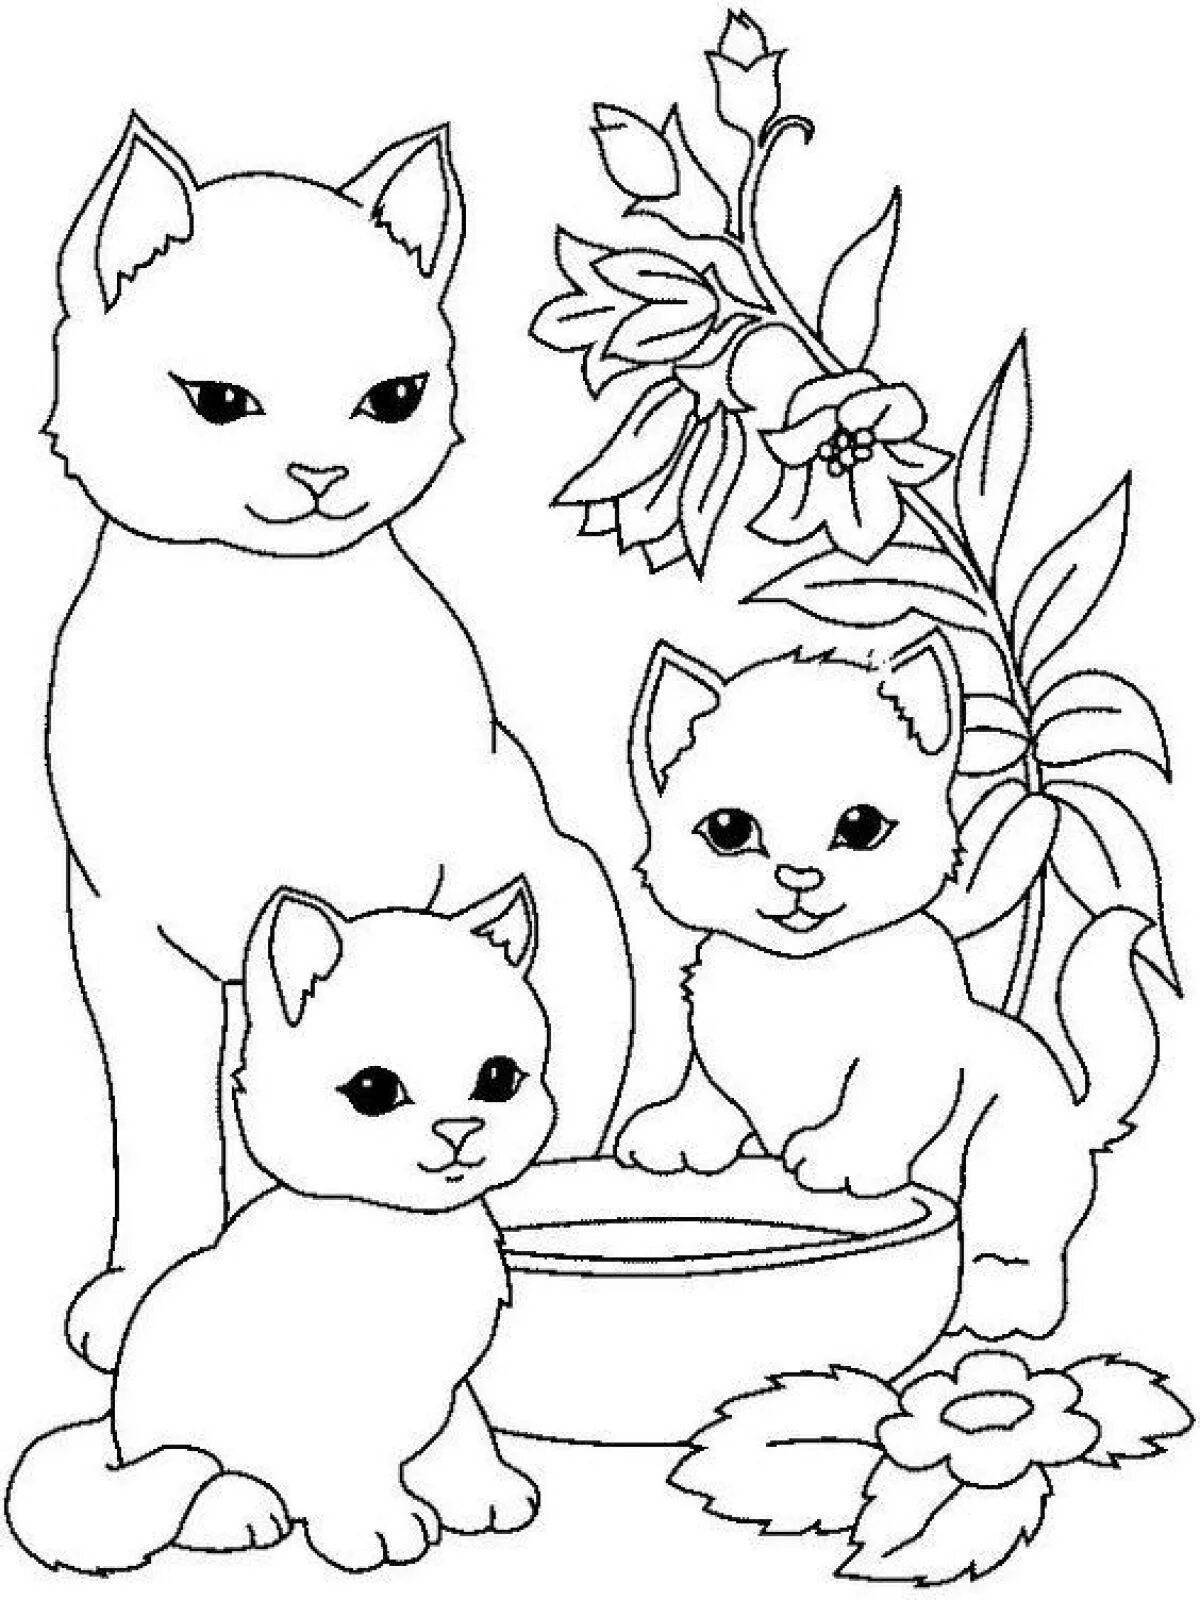 Забавная раскраска для детей 5-6 лет для девочек животные